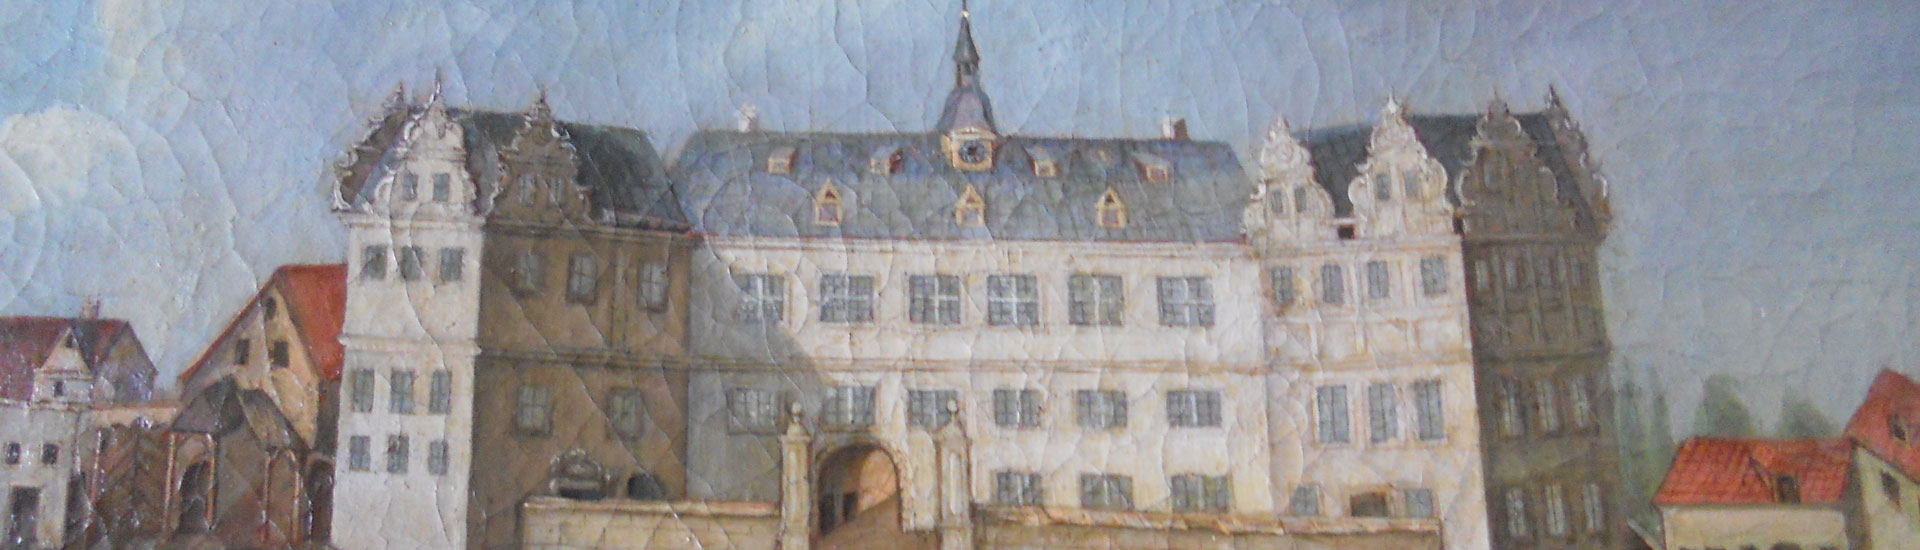 Schloss_wallhausen_gemaelde_Schmall